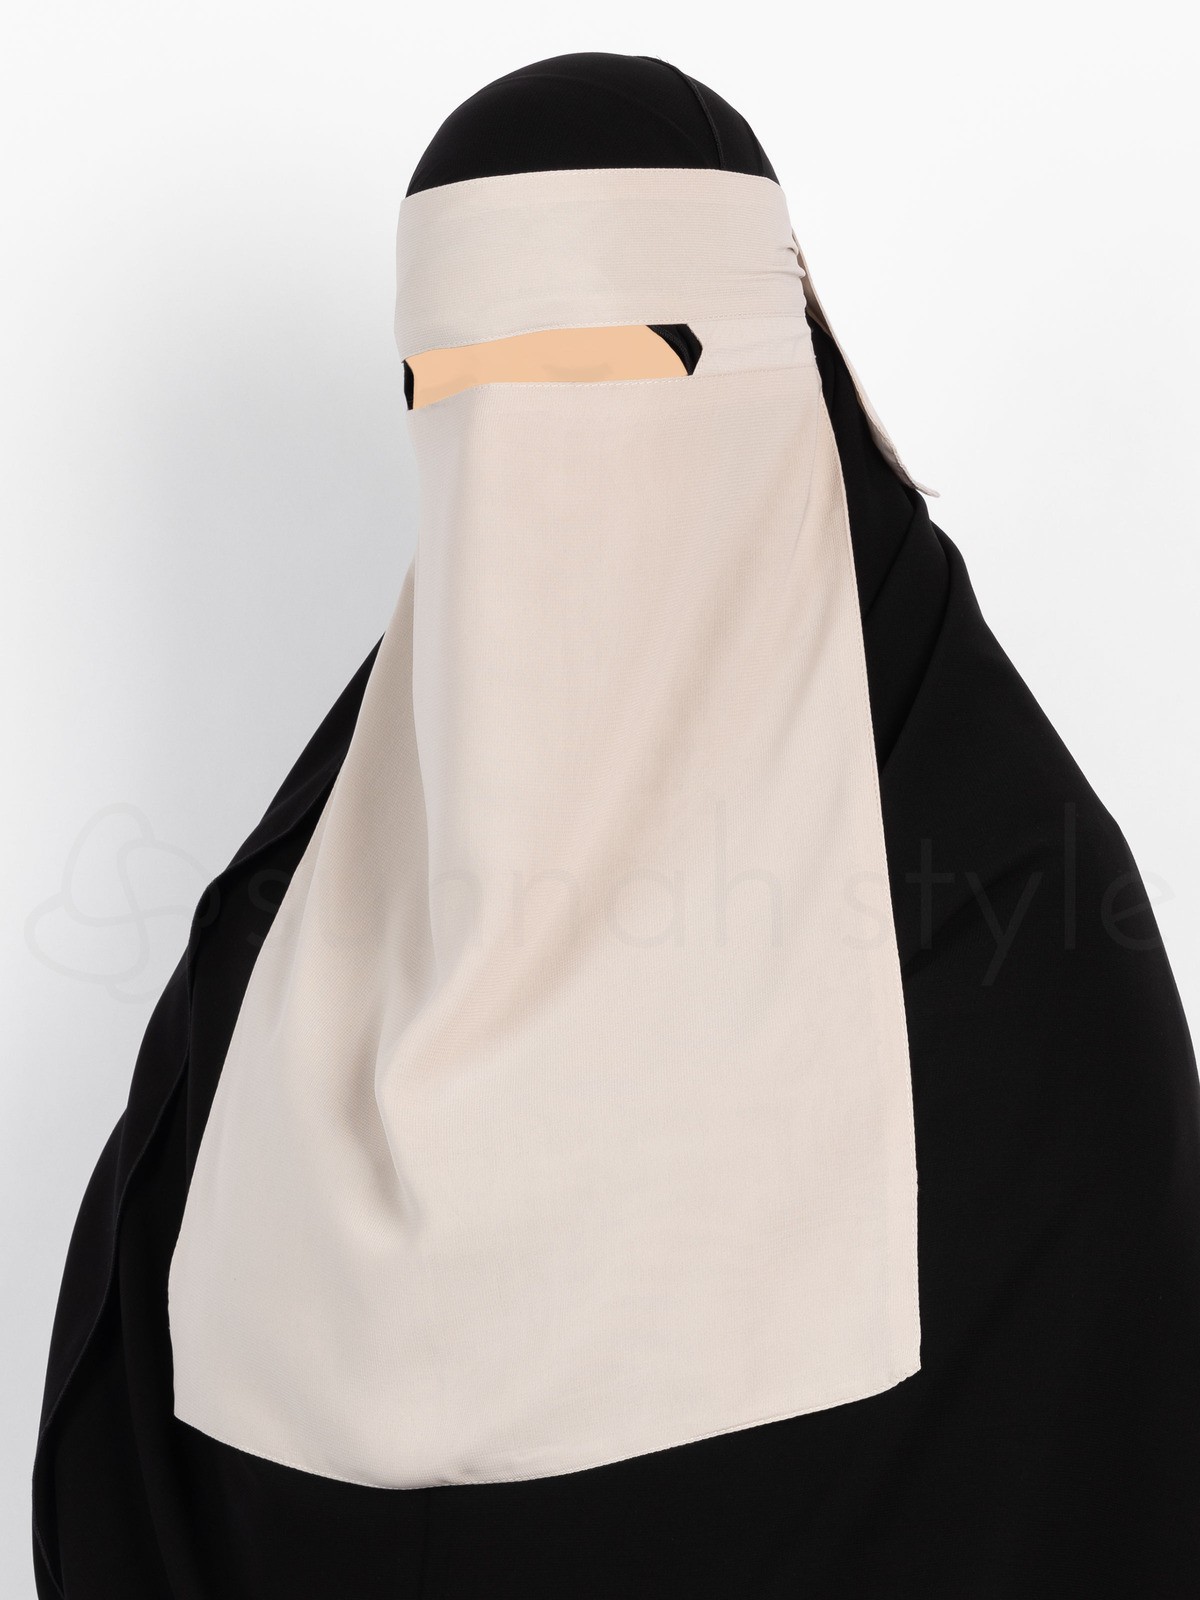 Sunnah Style - No-Pinch One Layer Niqab (Sahara)